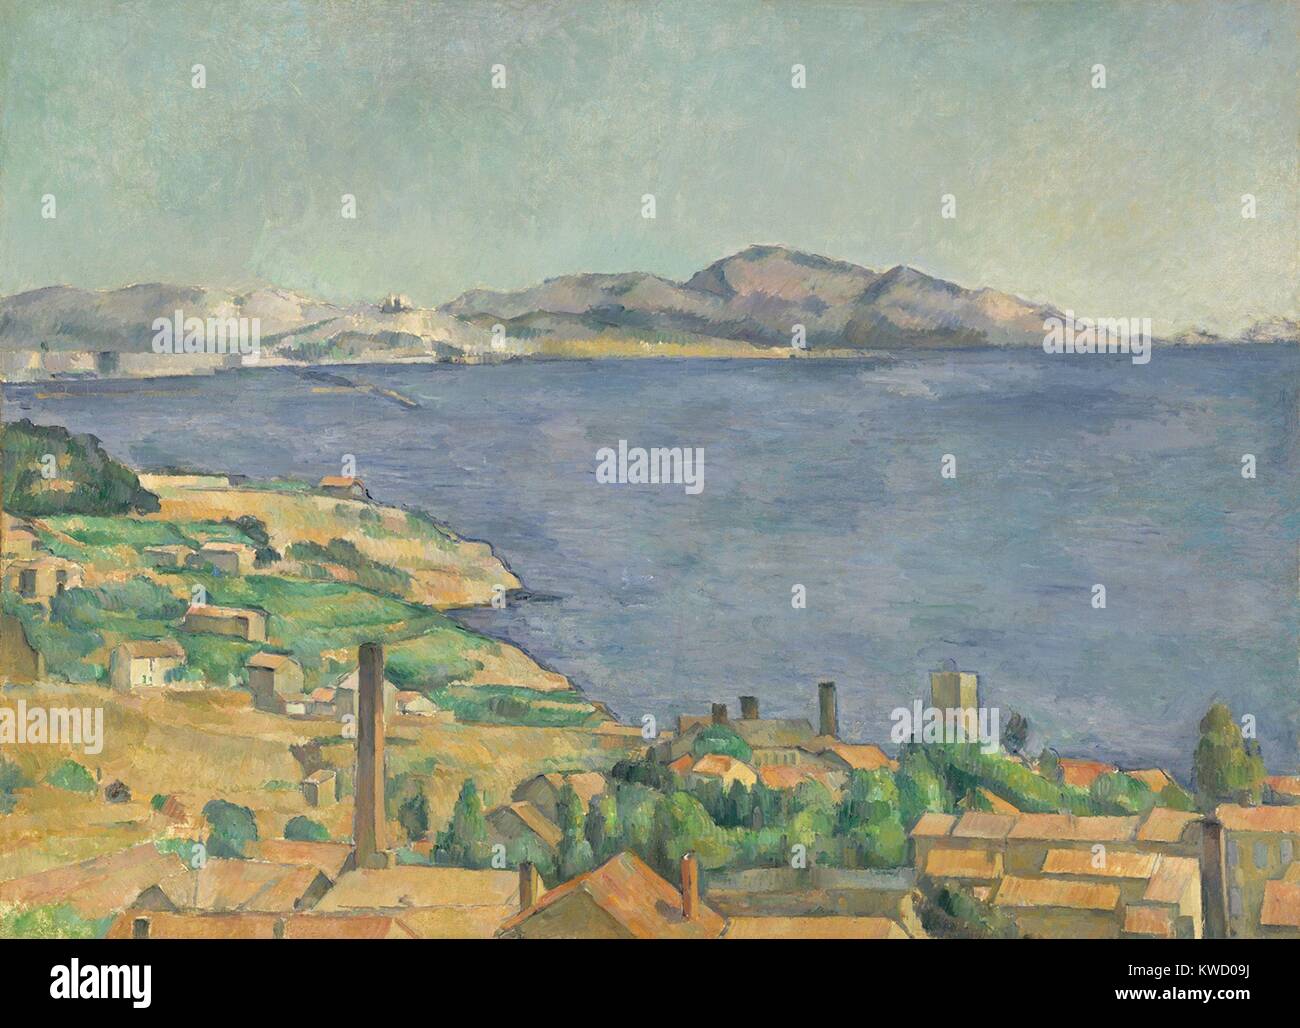 Golfe de Marseille vu de LEstaque, par Paul Cezanne, 1885, peinture postimpressionniste. Les toits rouges du village de pêcheurs de l'Estaque contraste avec le bleu de la mer. Sur une colline, à distance sont les tours de Notre-Dame-de-la-Garde dans la ville de Ma (BSLOC 2017 5 6) Banque D'Images